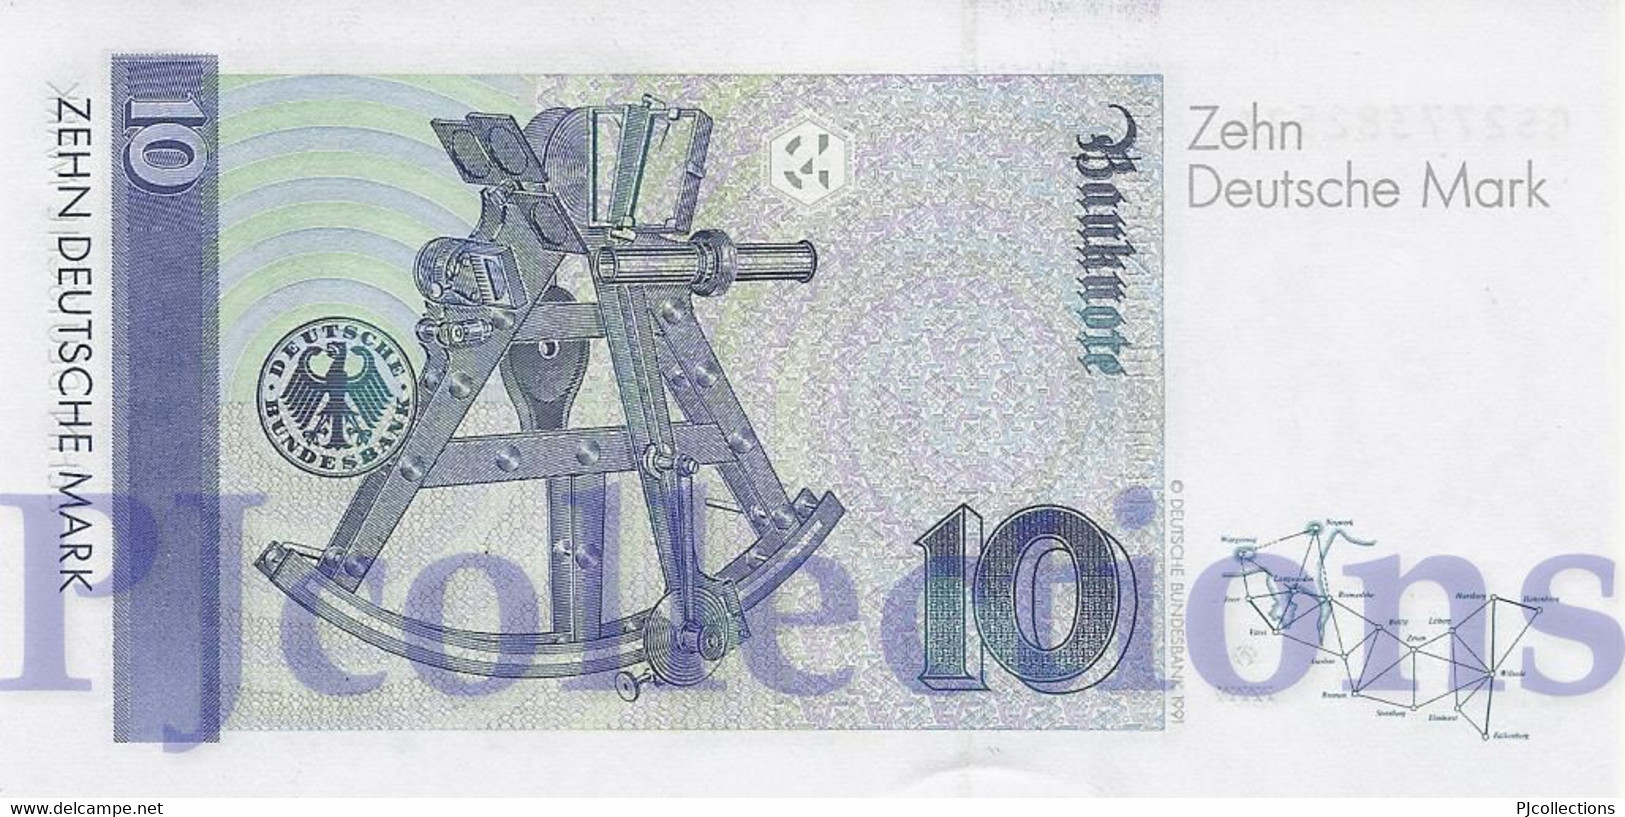 GERMANY FEDERAL REPUBLIC 10 DEUTSCHEMARK 1999 PICK 38d UNC - 10 Deutsche Mark